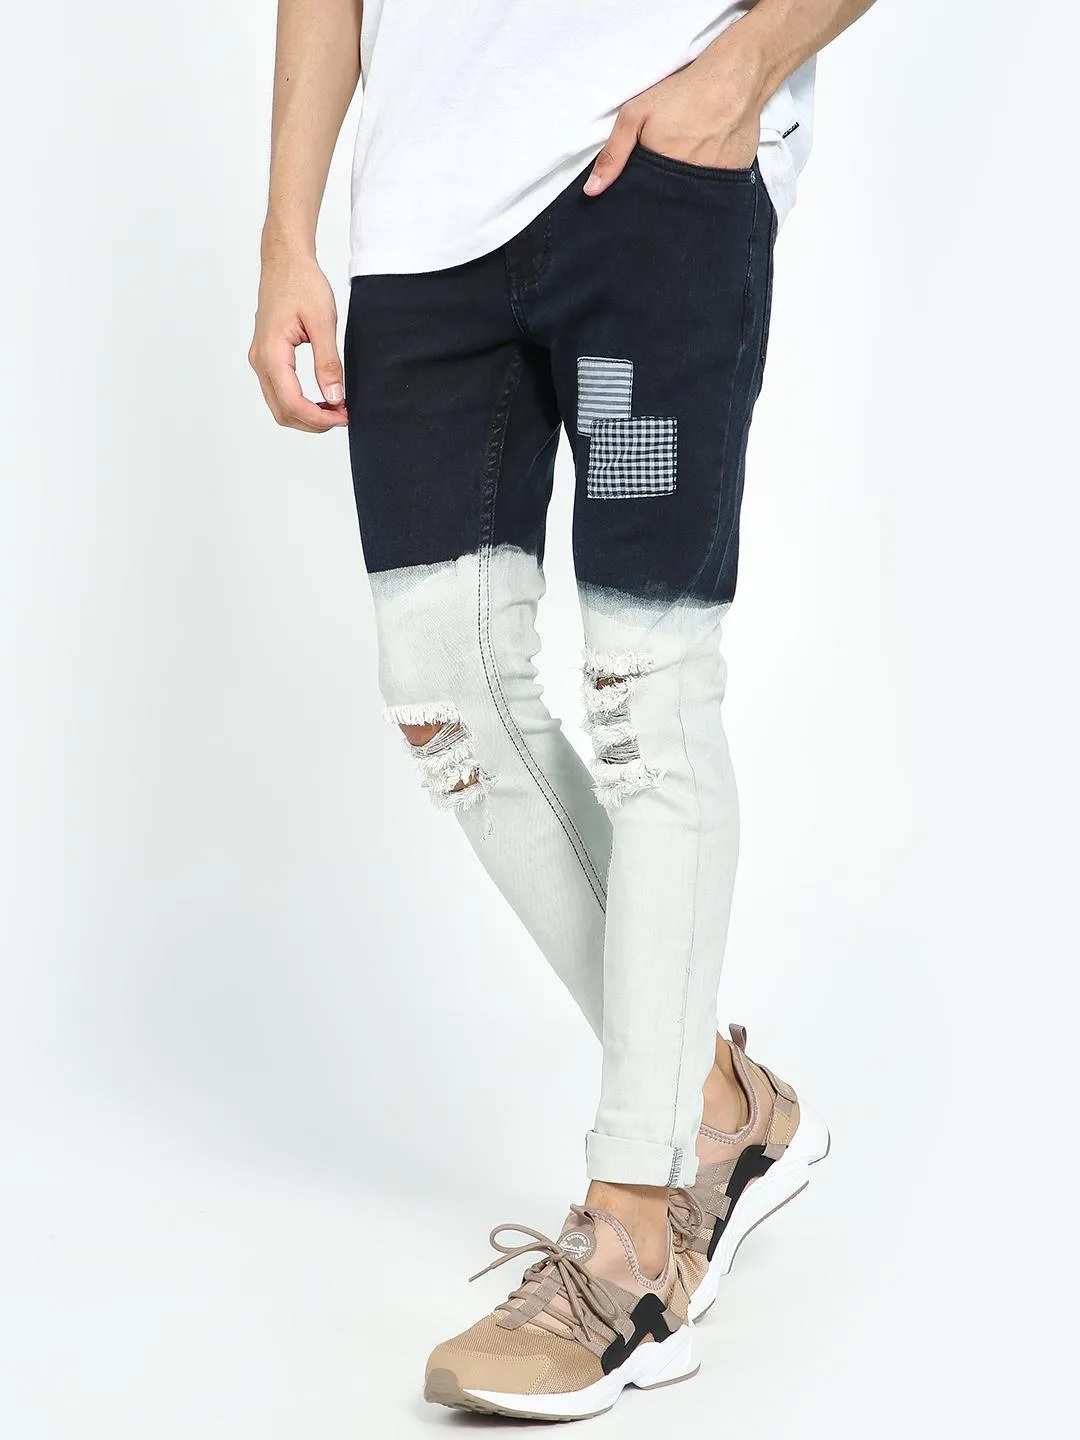 Buy Highlander Men's Slim Fit Jeans (13140001455869_HLJN000491_38W x  33L_Indigo) at Amazon.in